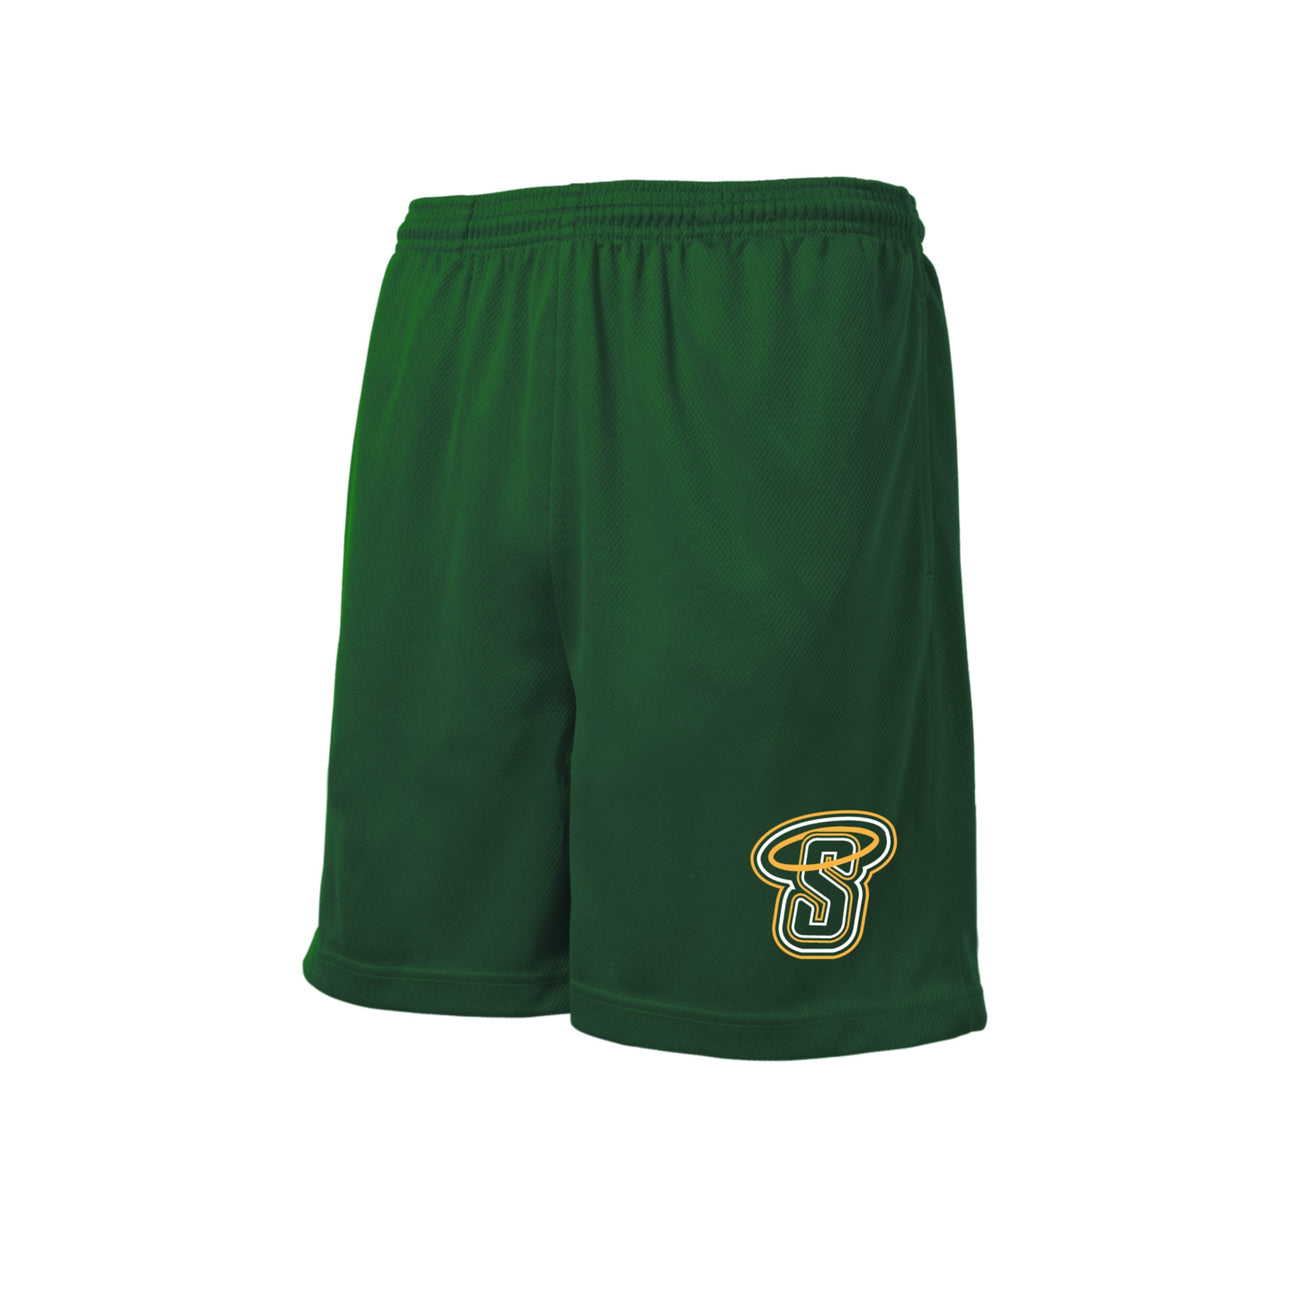 P.E. Shorts w/ SAP Logo – Campus Club Uniforms